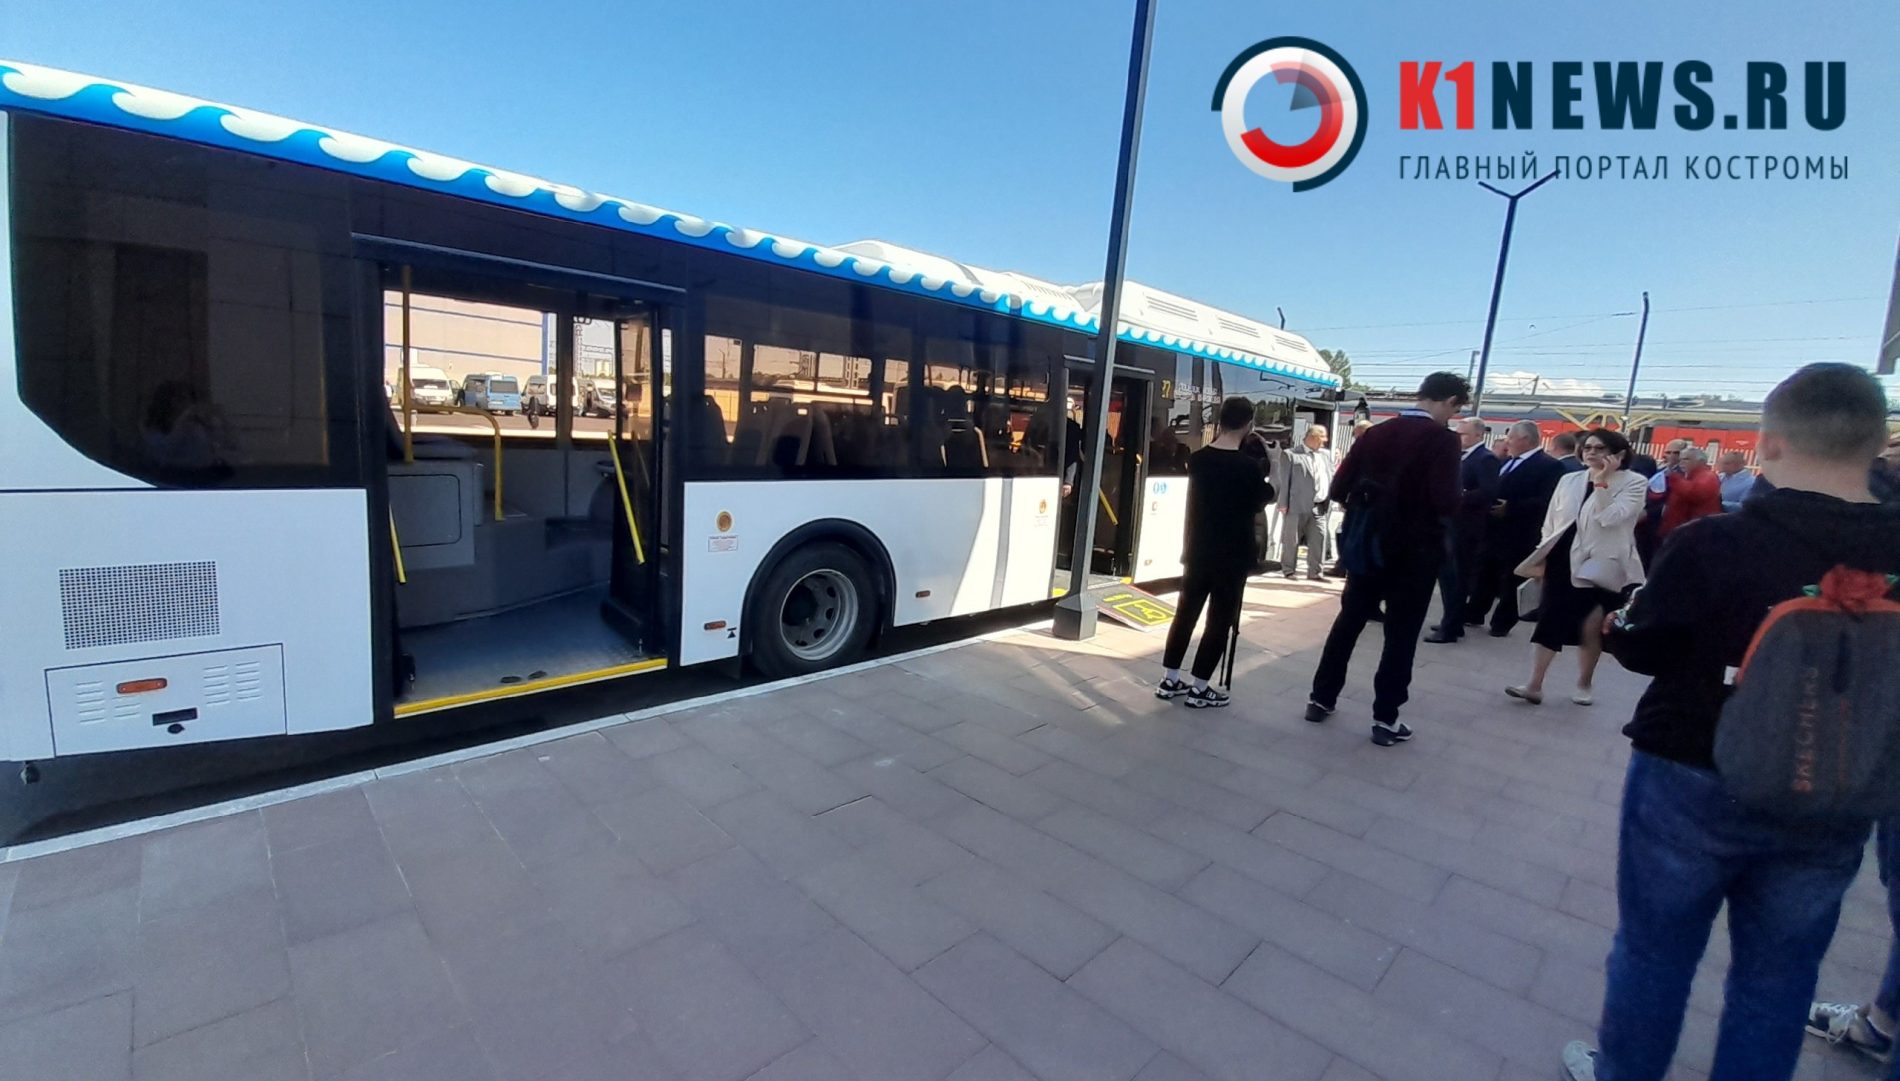 Ради новых автобусов в Костроме меняют работу светофоров